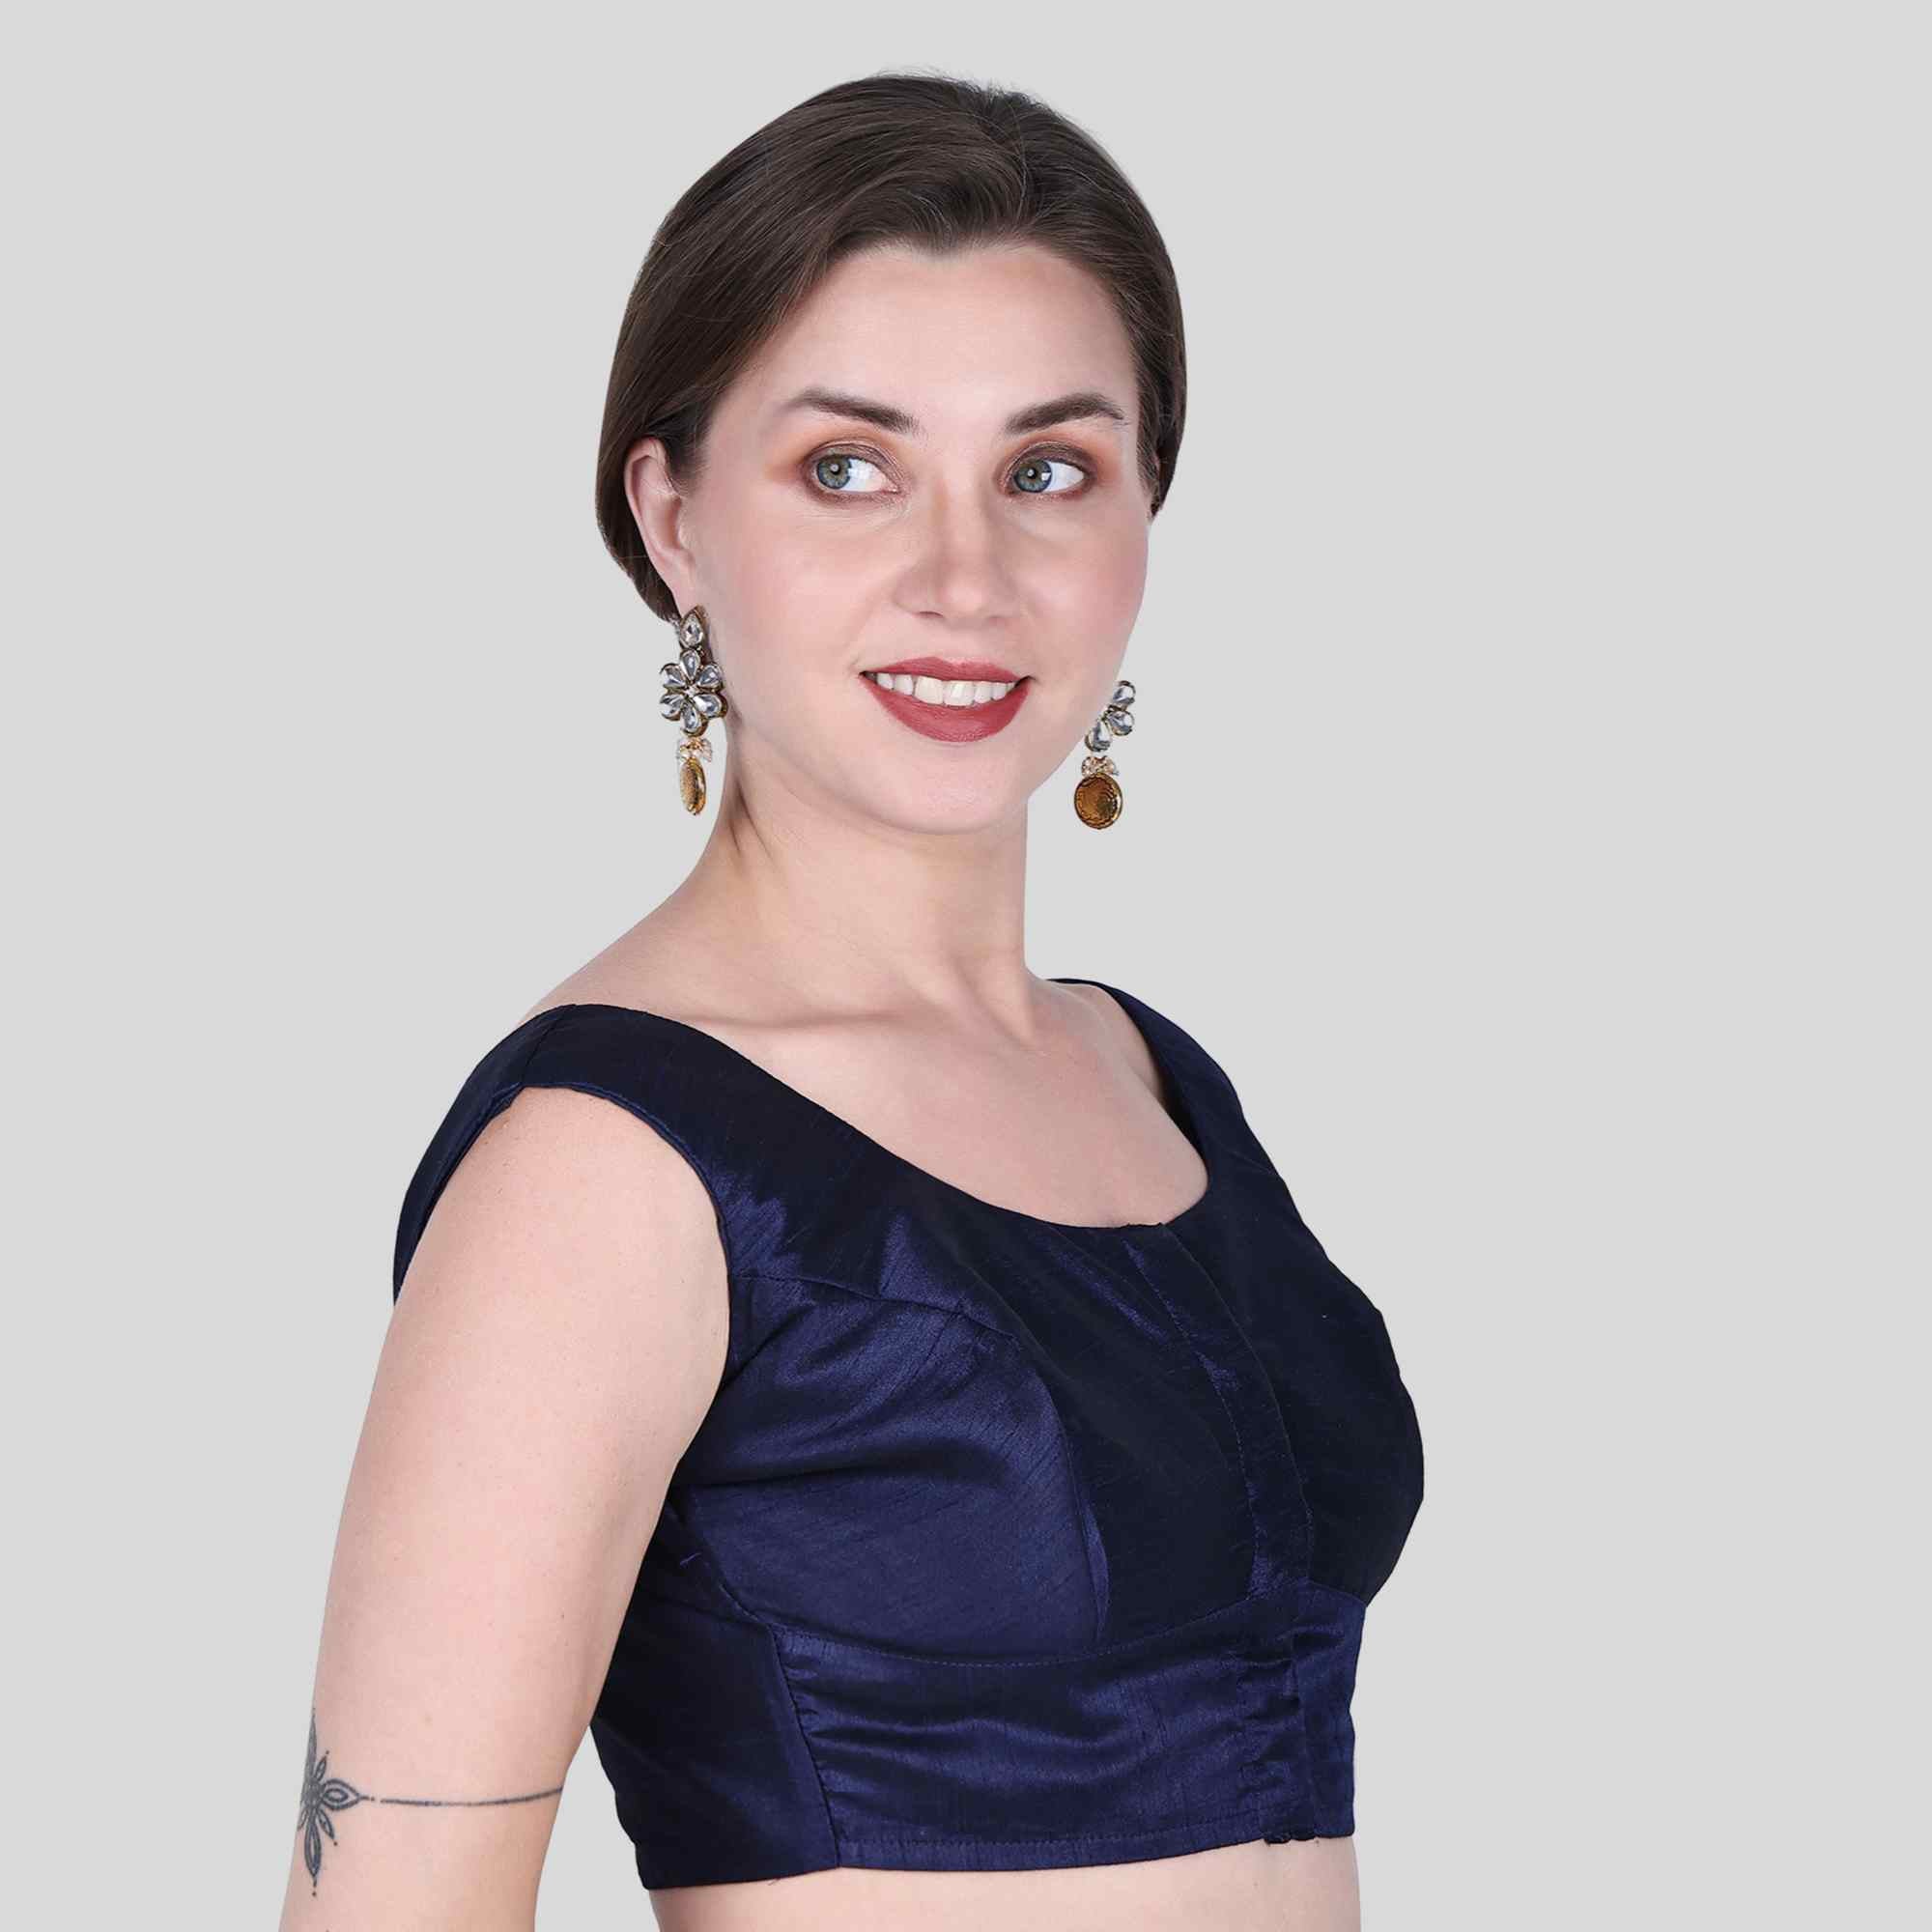 Sleeveless blouse available in ambattur chennai